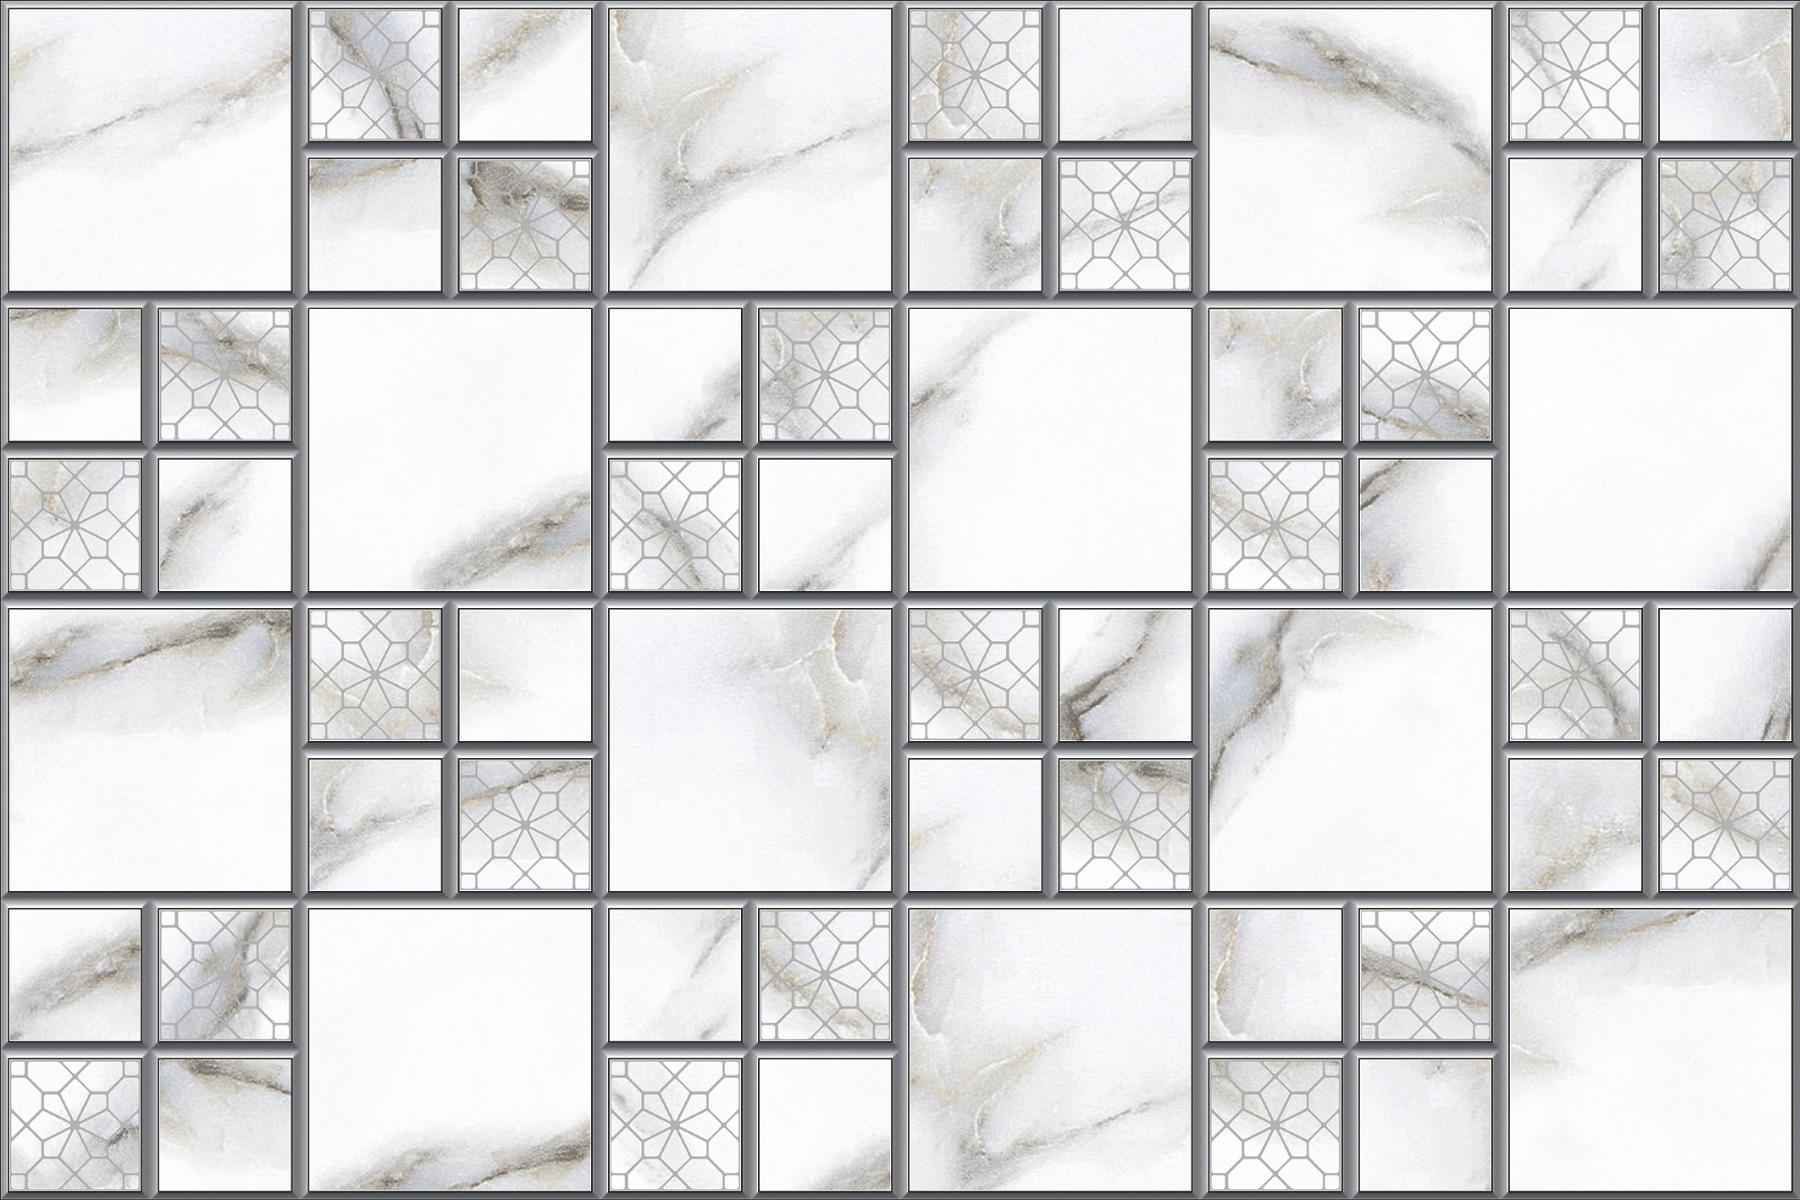 All Tiles for Bathroom Tiles, Living Room Tiles, Kitchen Tiles, Bedroom Tiles, Balcony Tiles